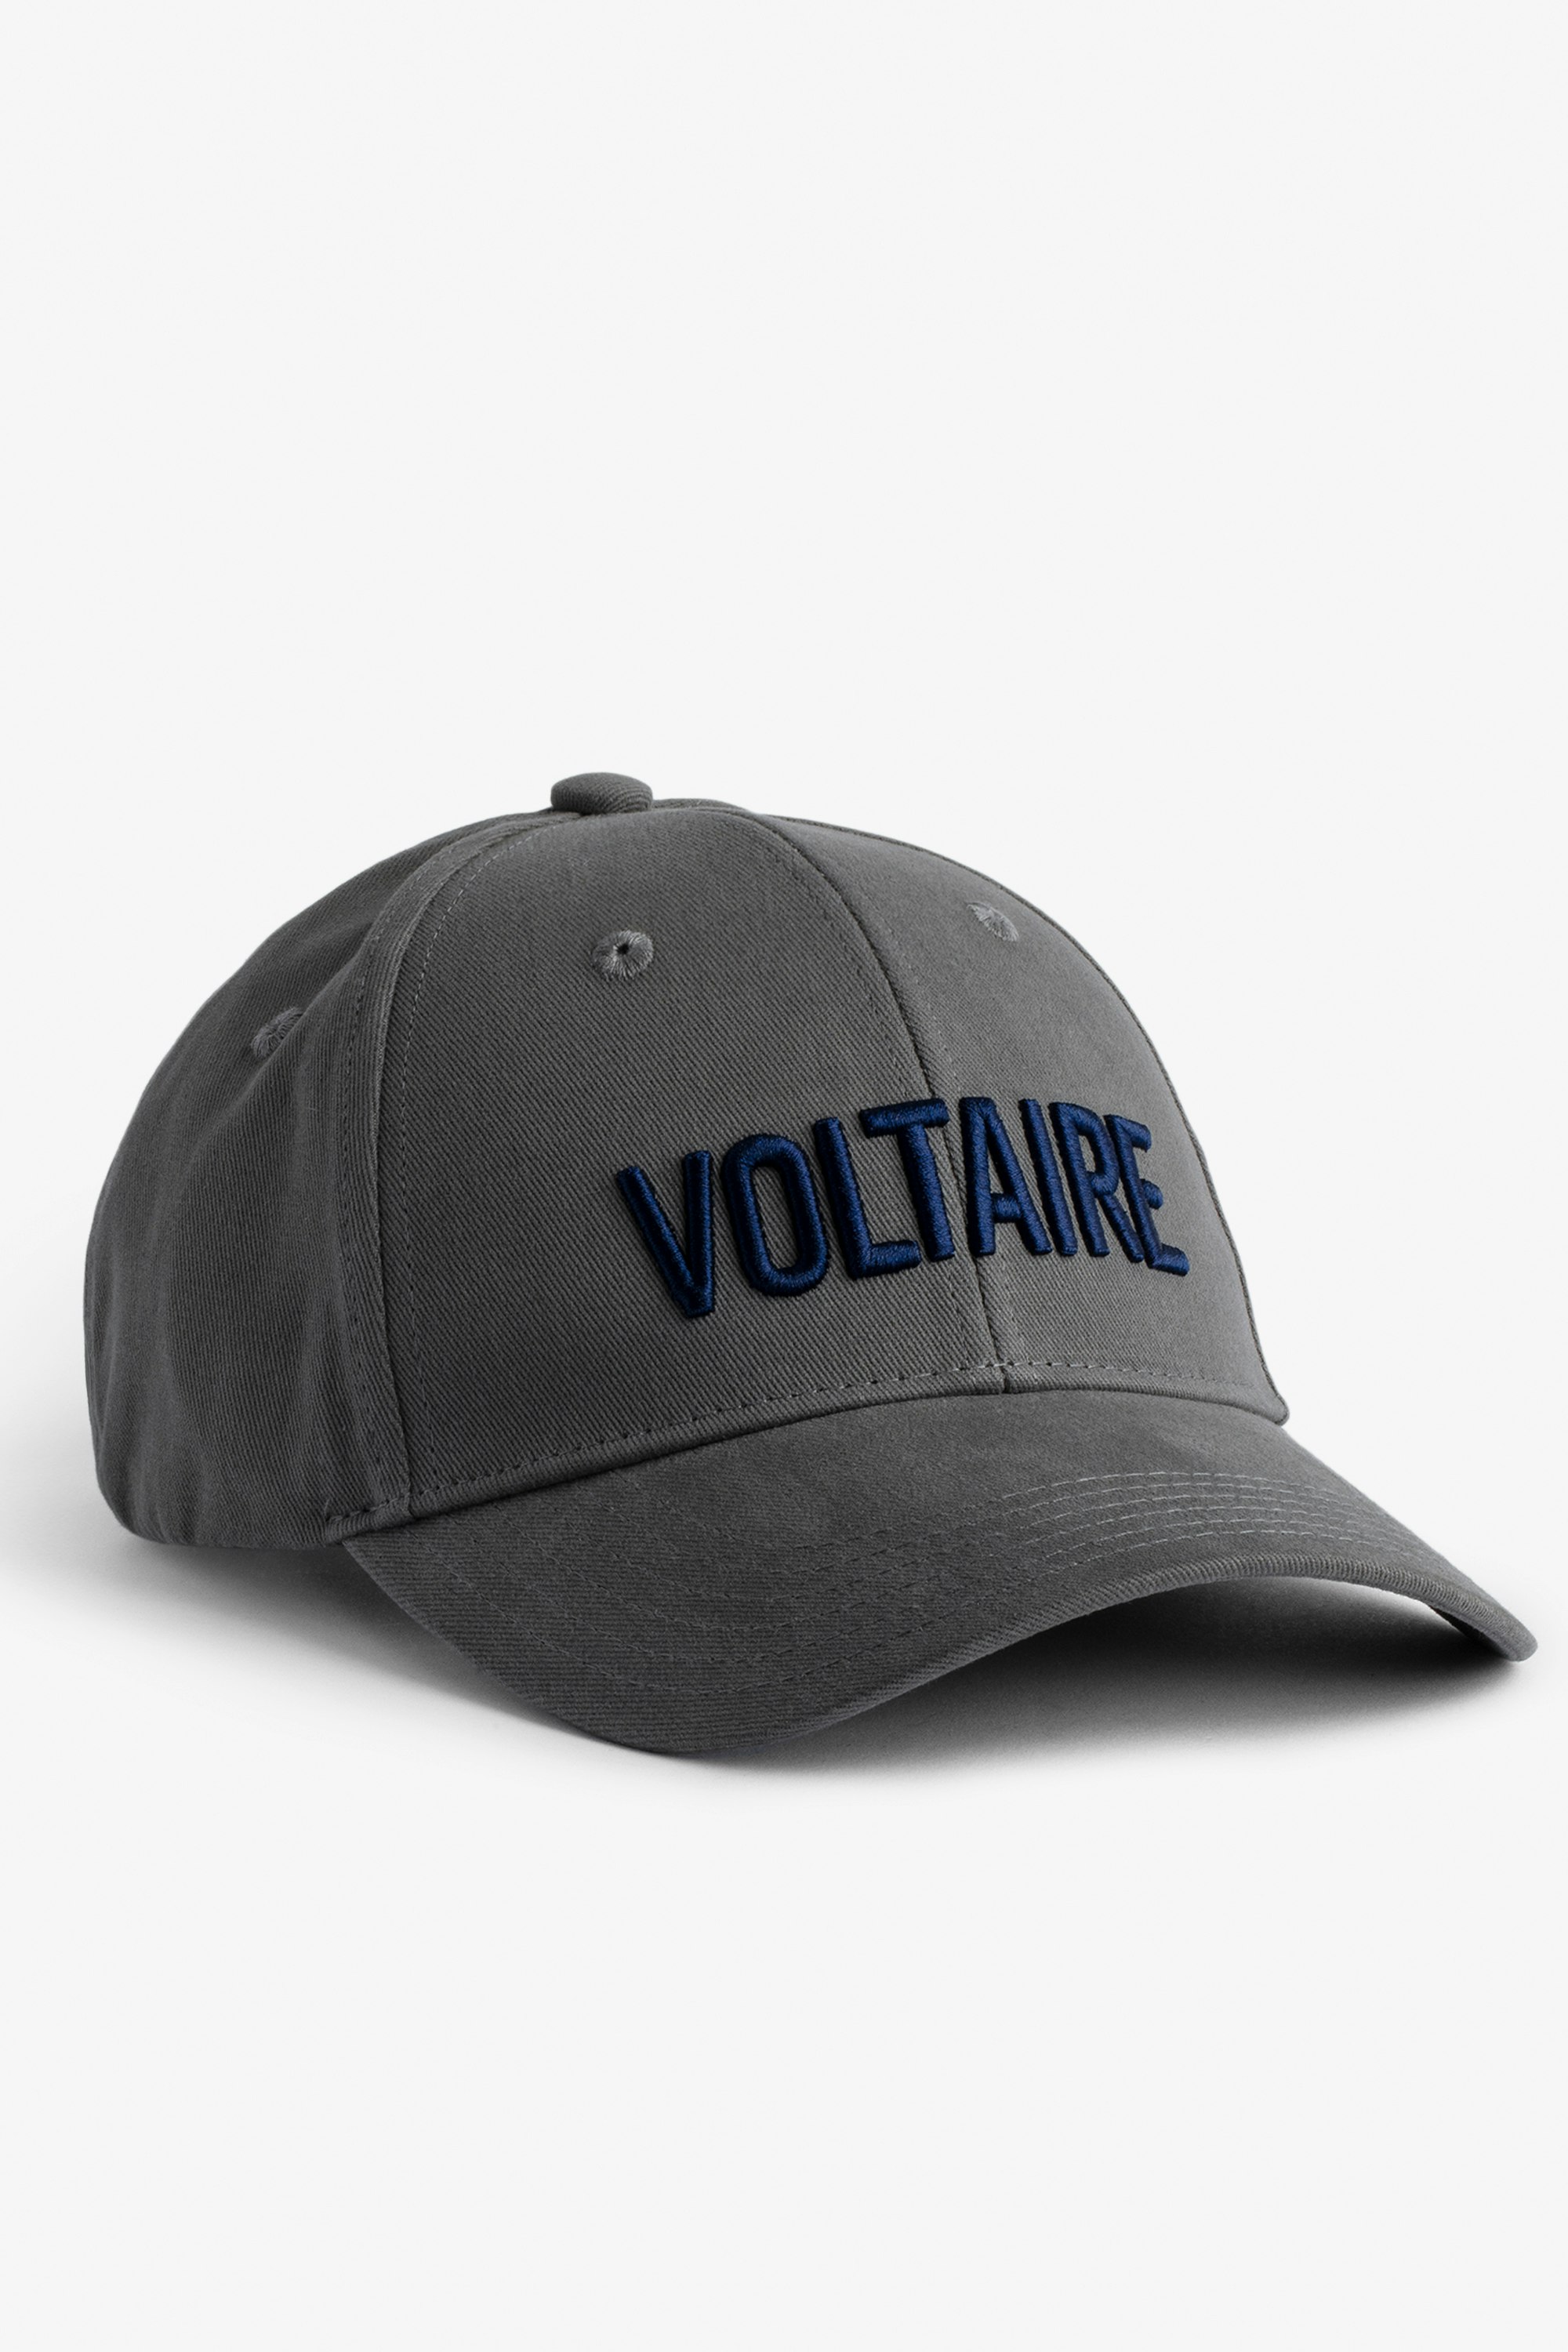 Klelia Voltaire キャップ - グレーコットン 「Voltaire」刺繍入りキャップ メンズ